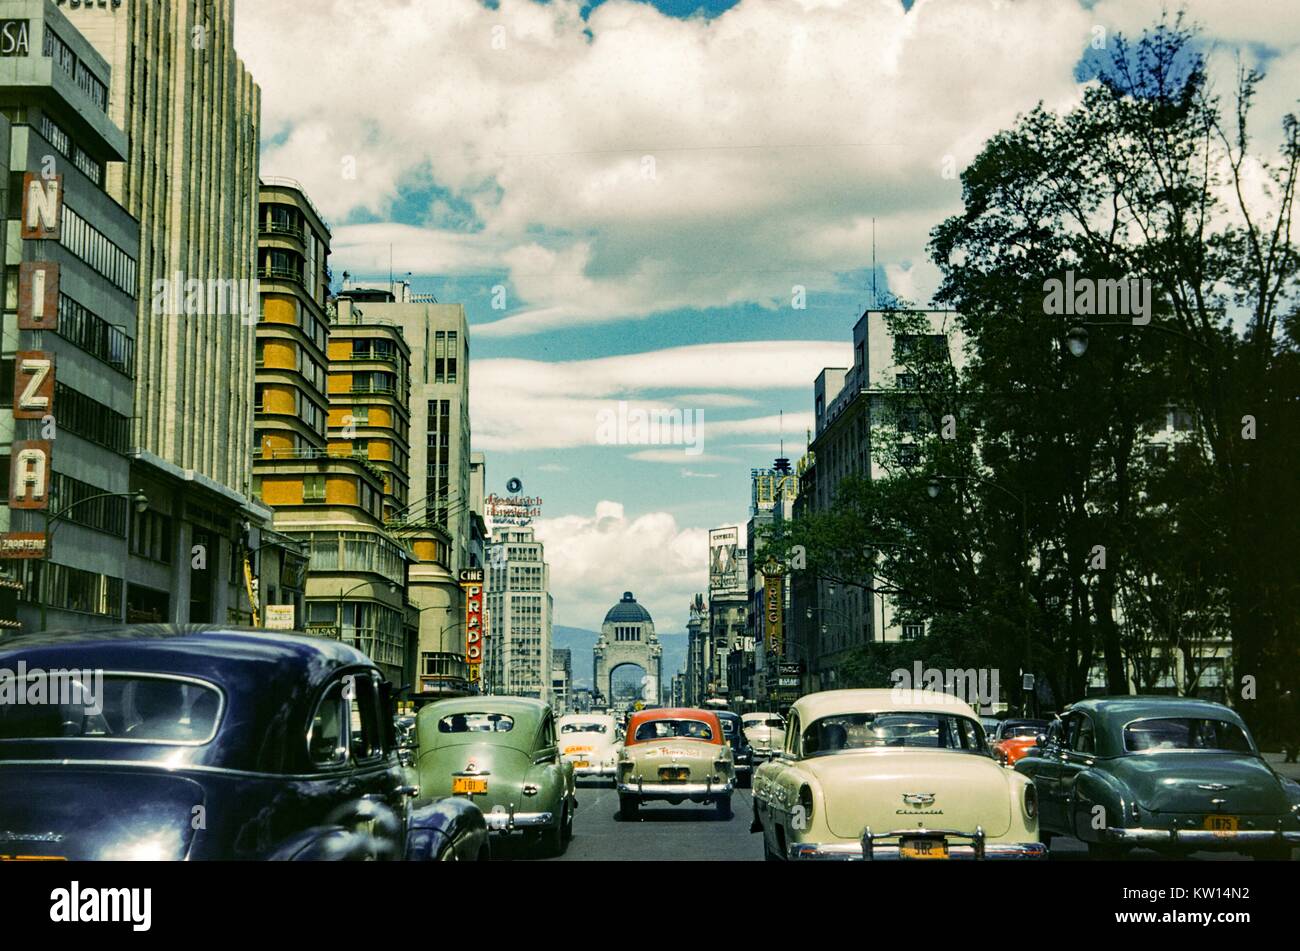 Di automobili che circolano per le strade di Città del Messico con la sequenza Cine Prado, l' Hotel Regis, e molti diversi cartelli pubblicitari visibile, Città del Messico, Messico, 1952. Foto Stock